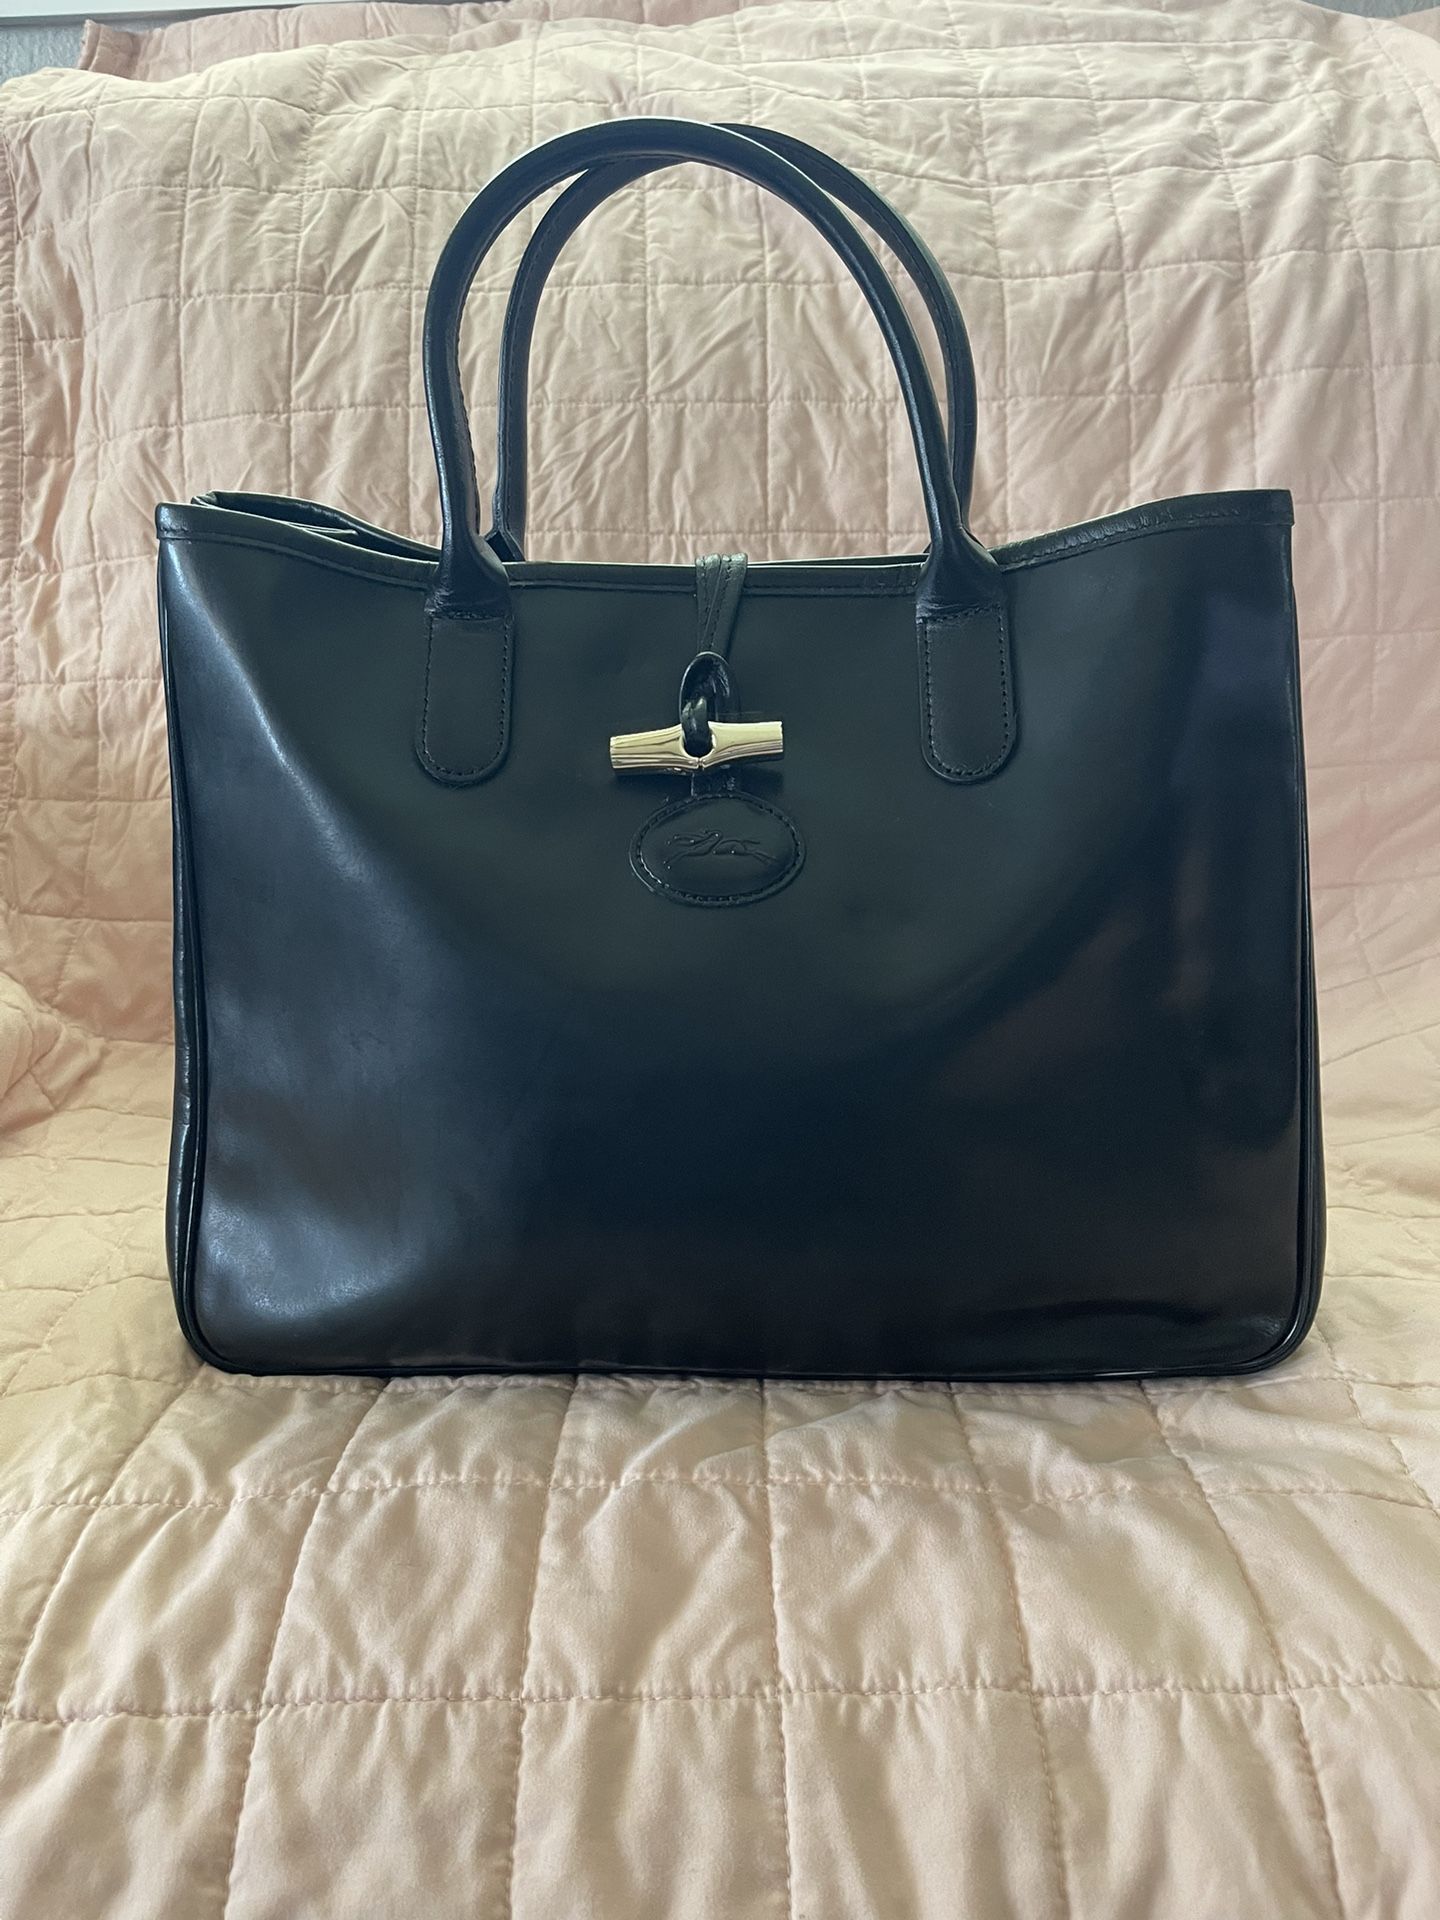 Longchamp Tote Shoulder Bag